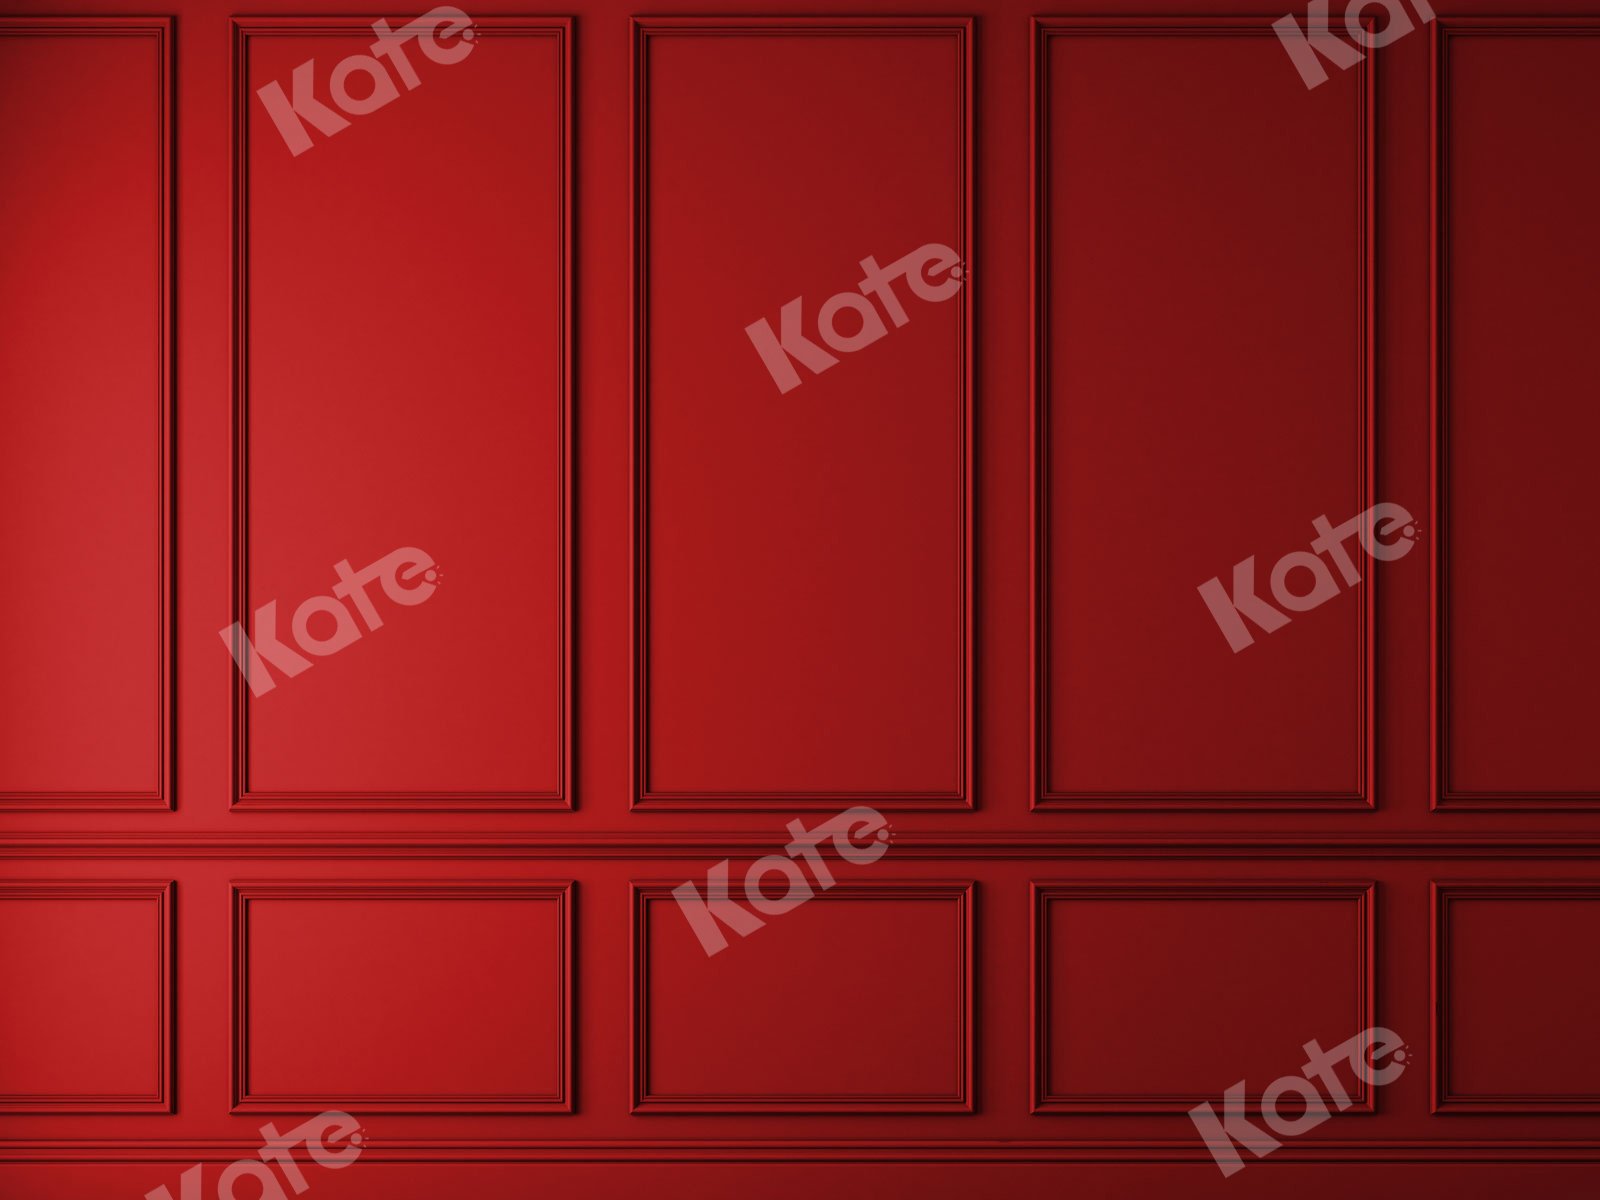 Kate Fondo de pared rojo vintage para fotografía puerta